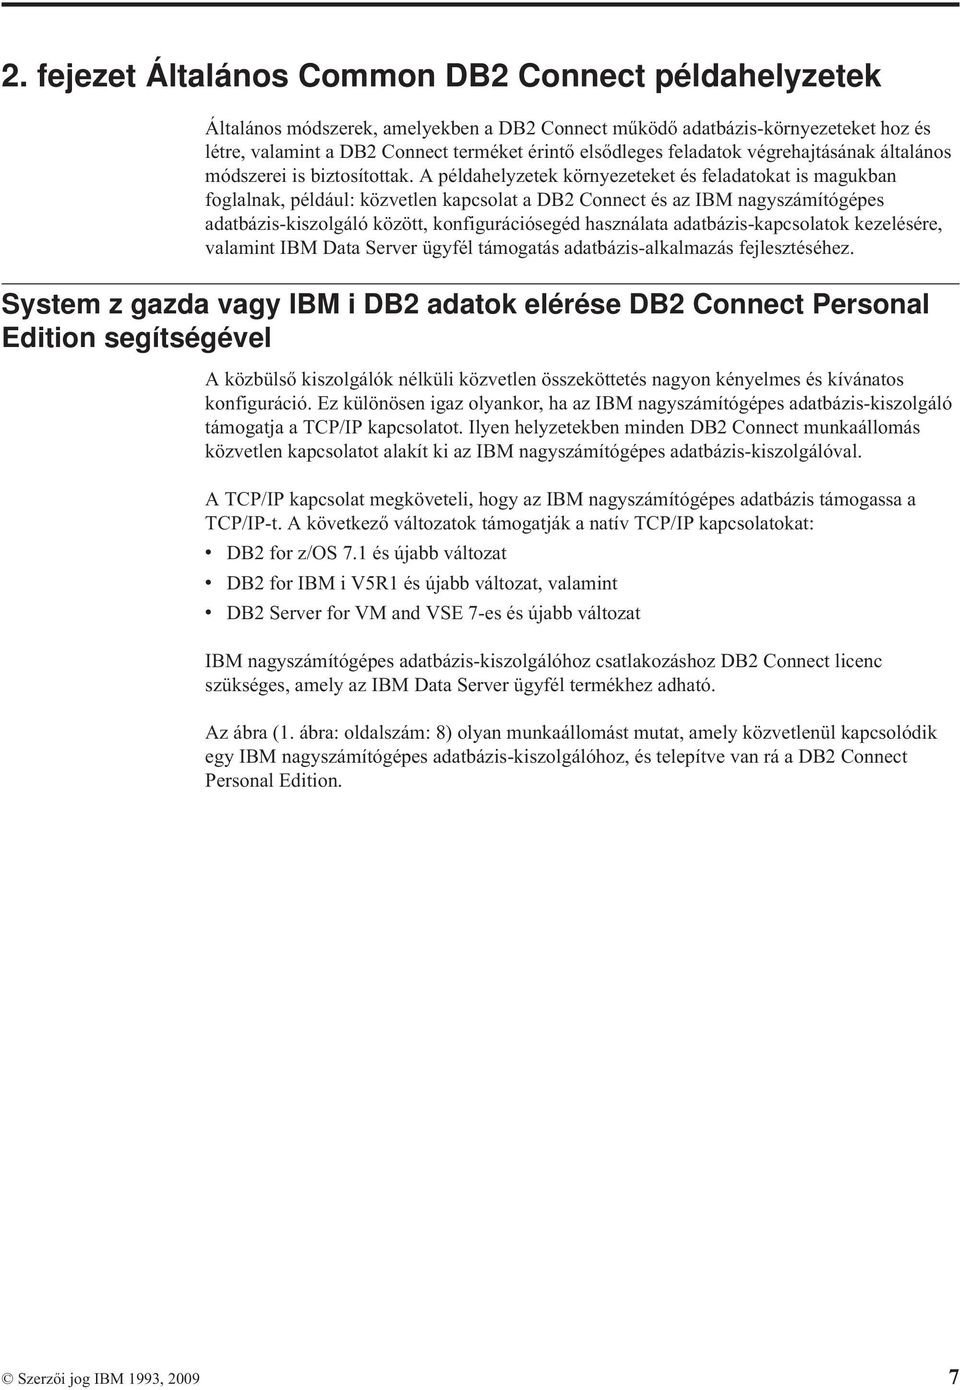 A példahelyzetek környezeteket és feladatokat is magukban foglalnak, például: közetlen kapcsolat a DB2 Connect és az IBM nagyszámítógépes adatbázis-kiszolgáló között, konfigurációsegéd használata